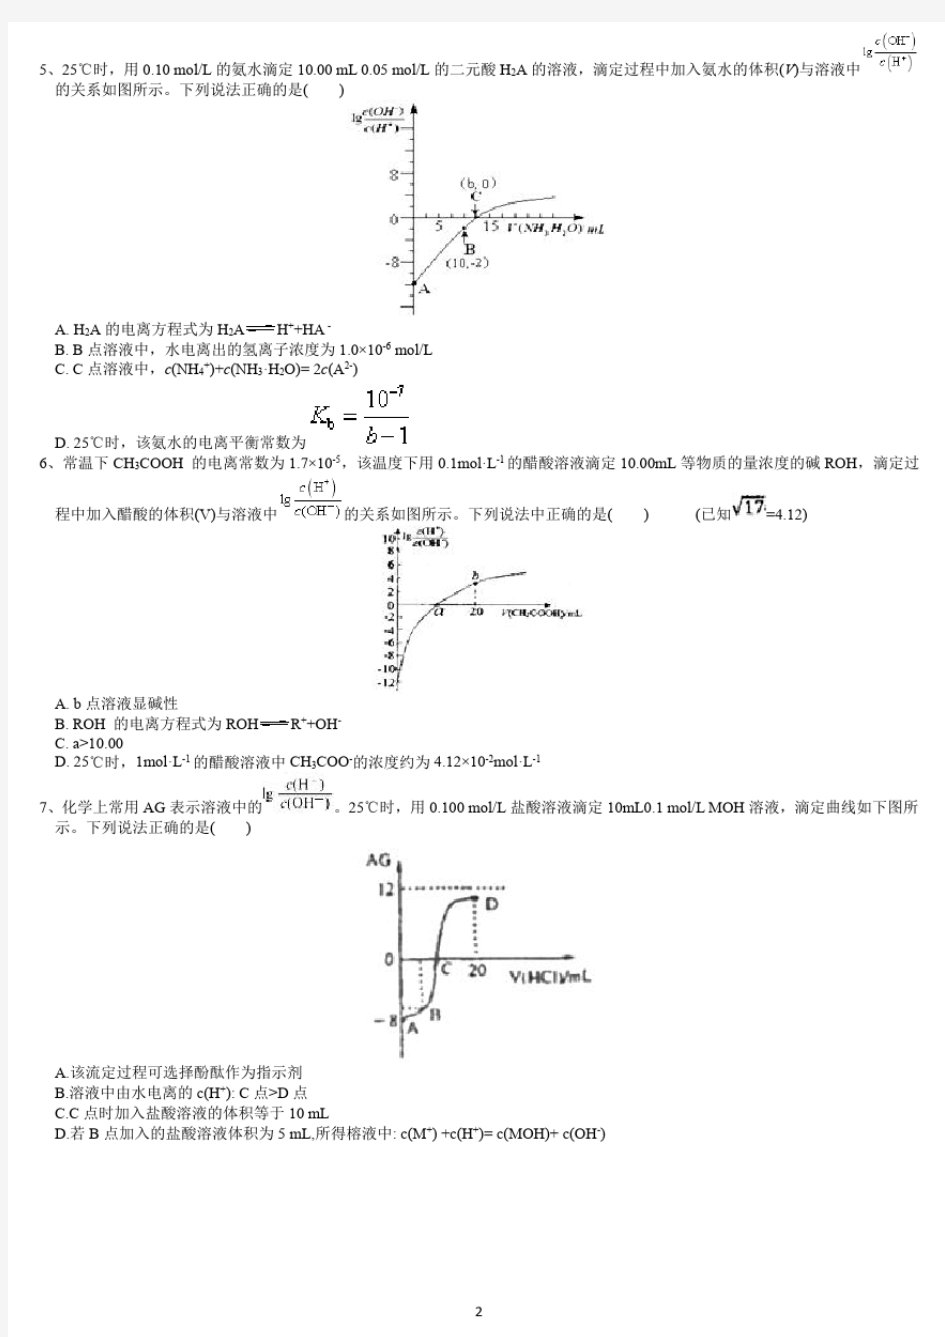 AG曲线——酸碱中和滴定曲线大全.pdf